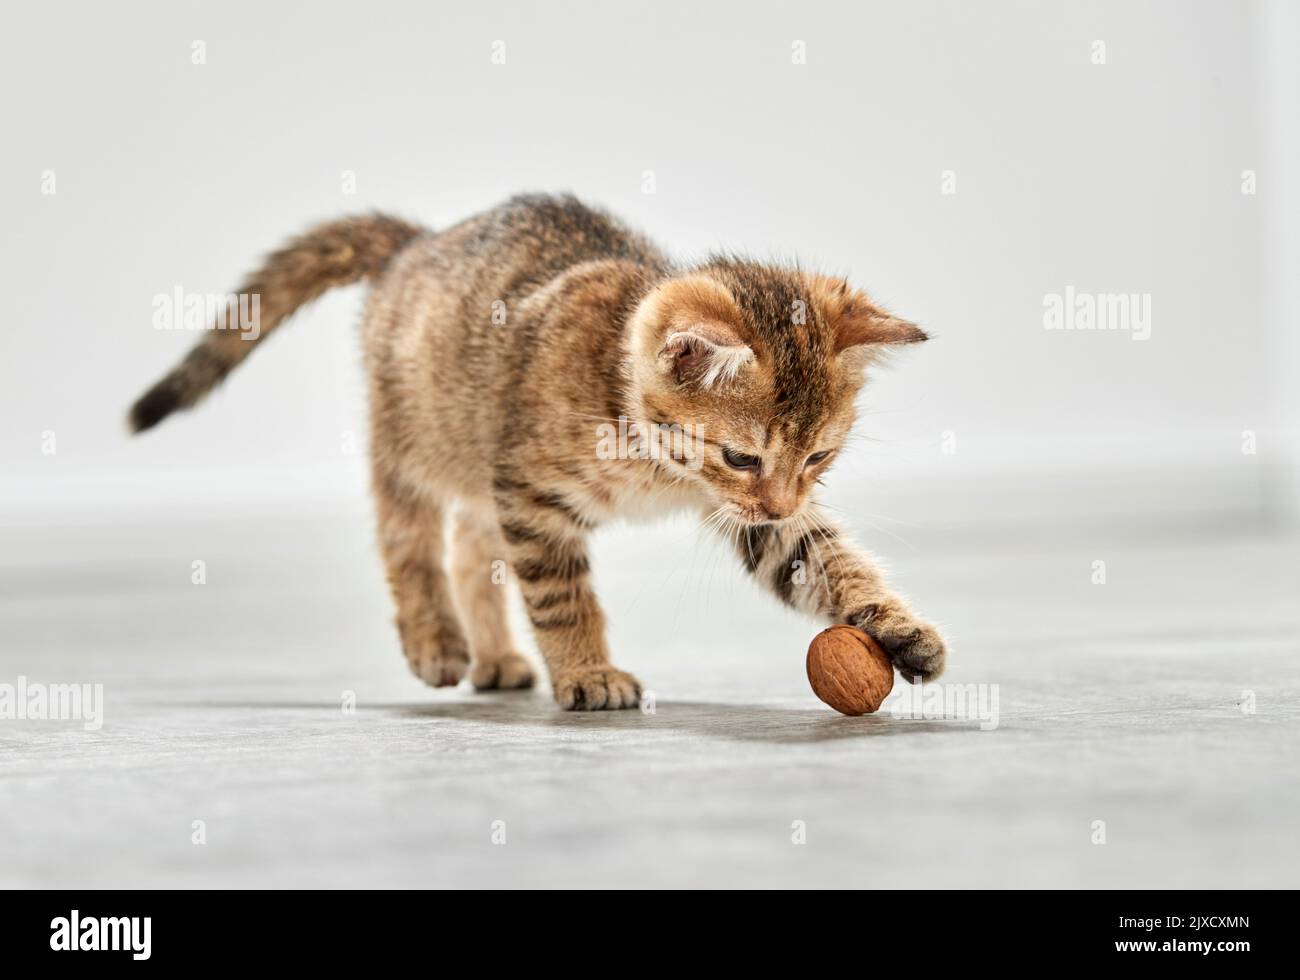 Gato doméstico. Un gatito tabby juega con una nuez. Alemania Foto de stock